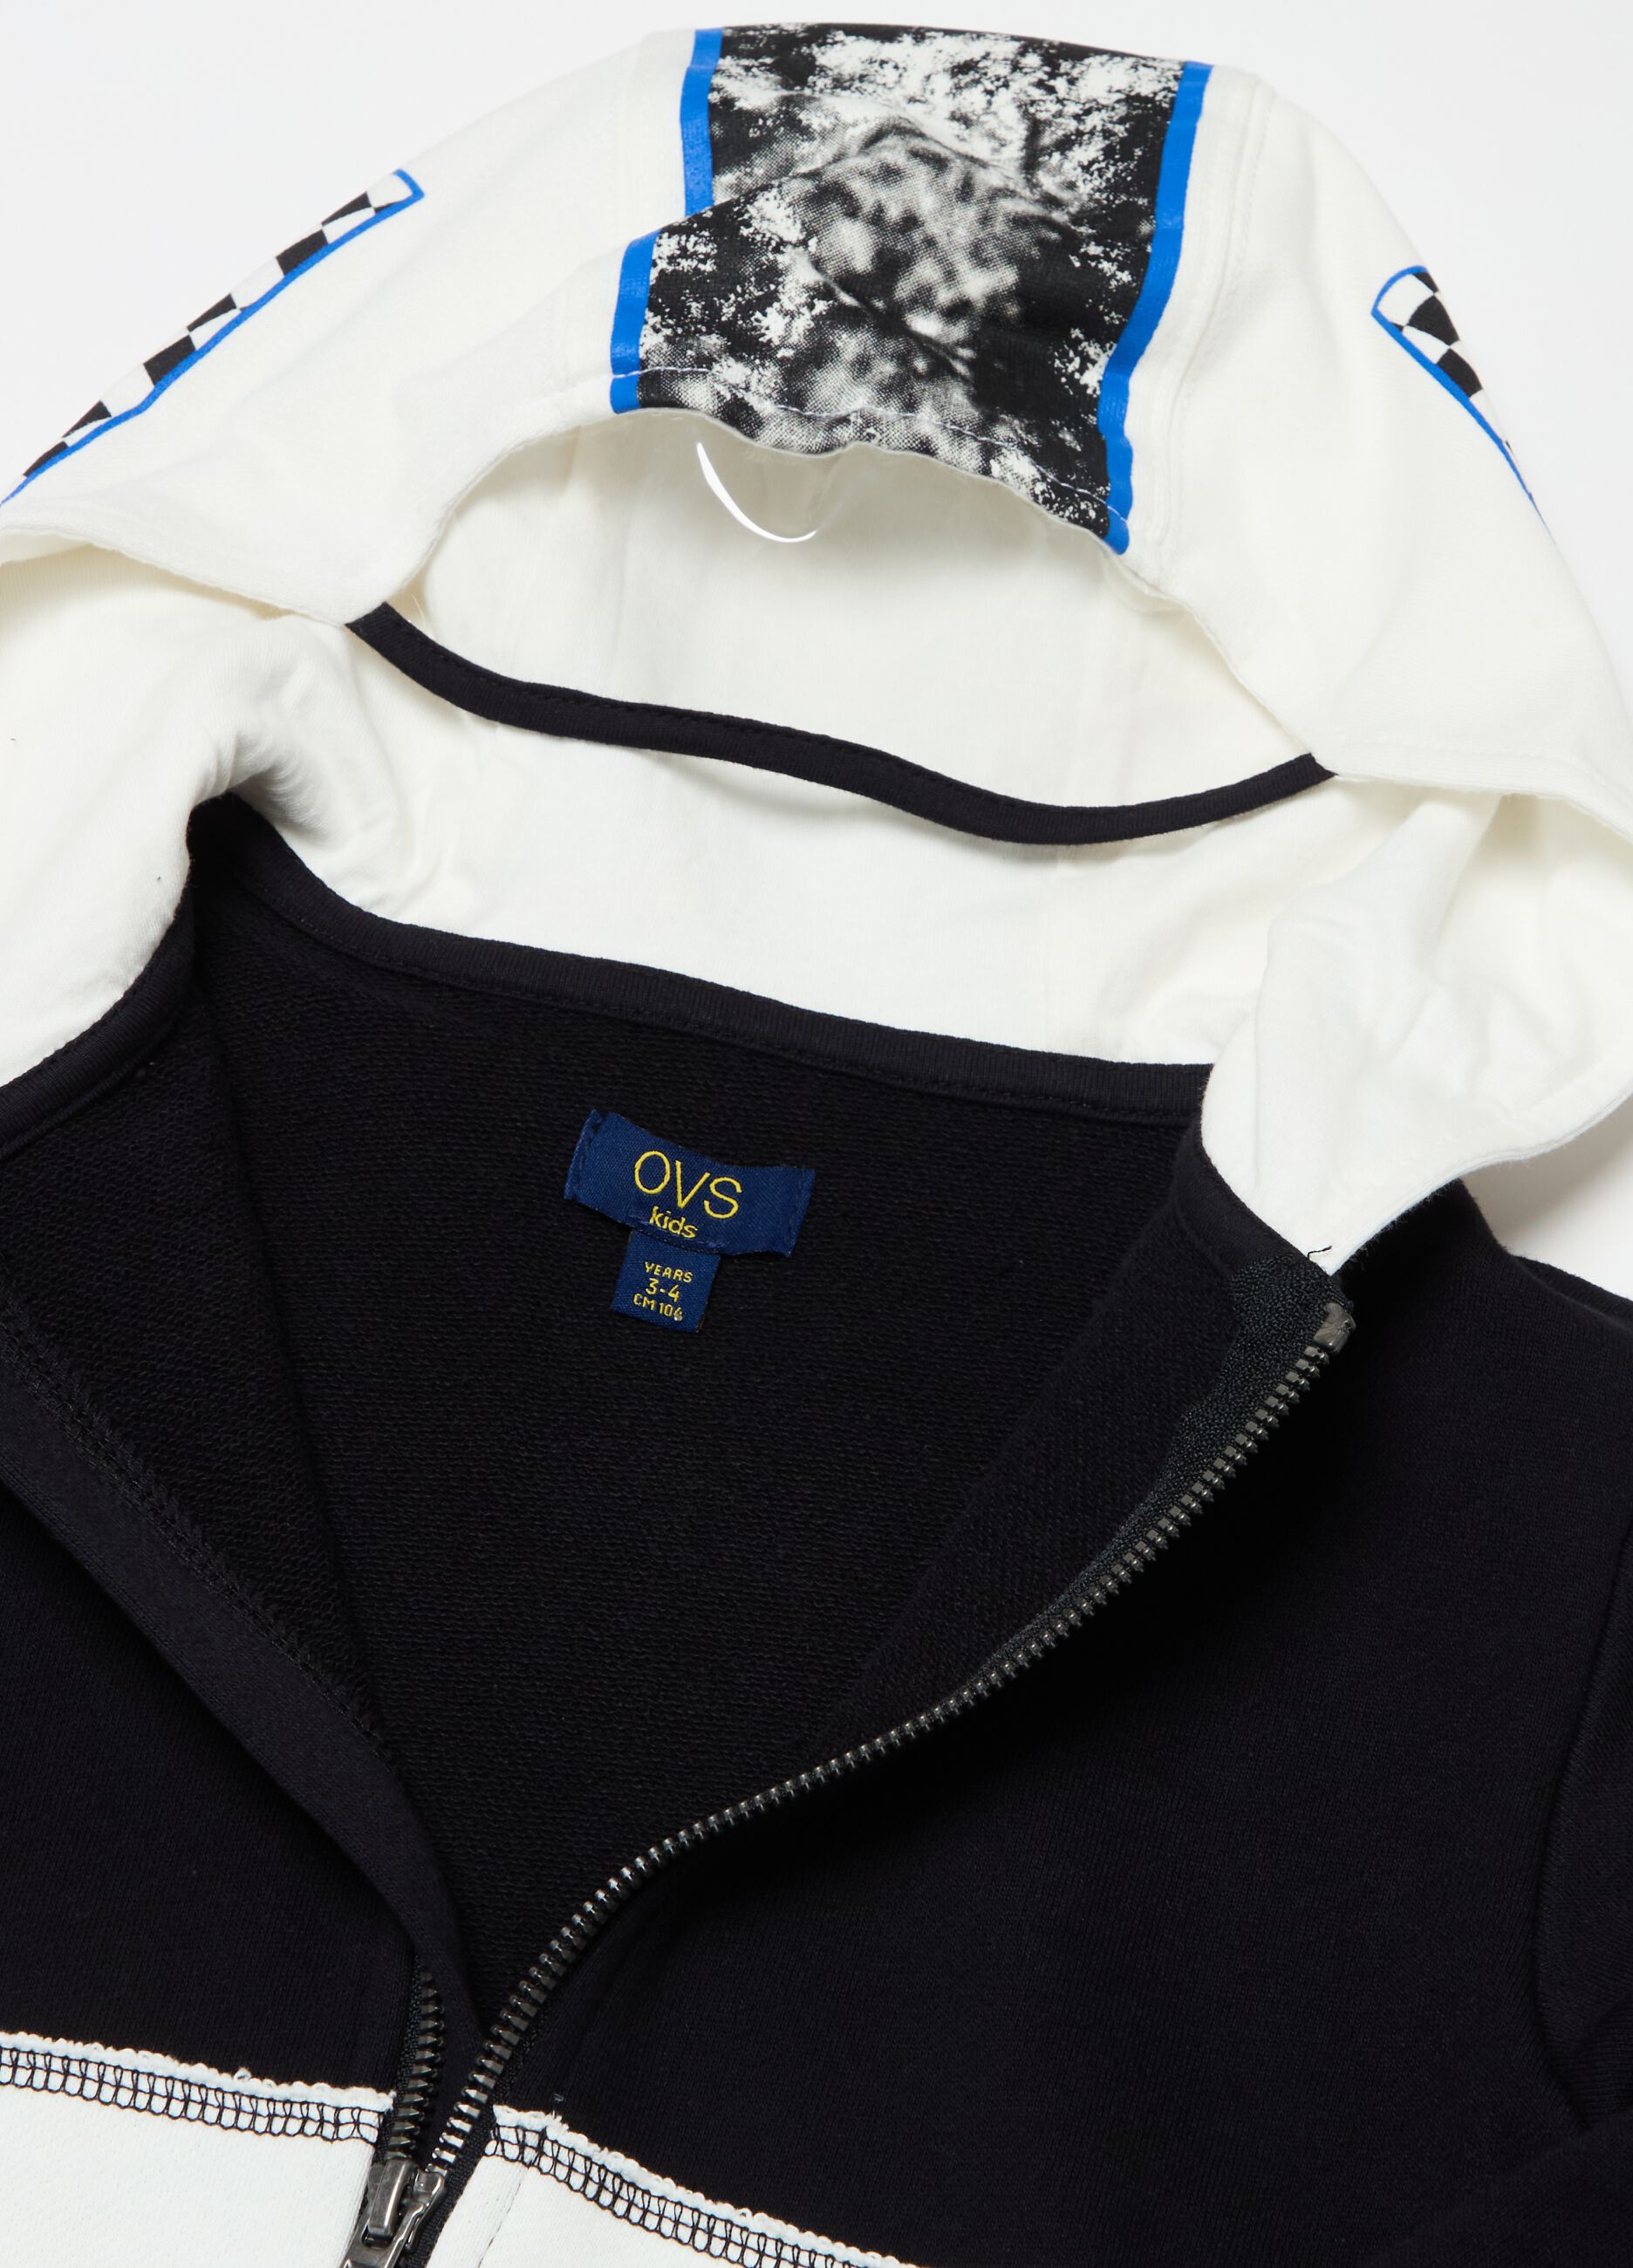 Full-zip sweatshirt with hood and racing bike print